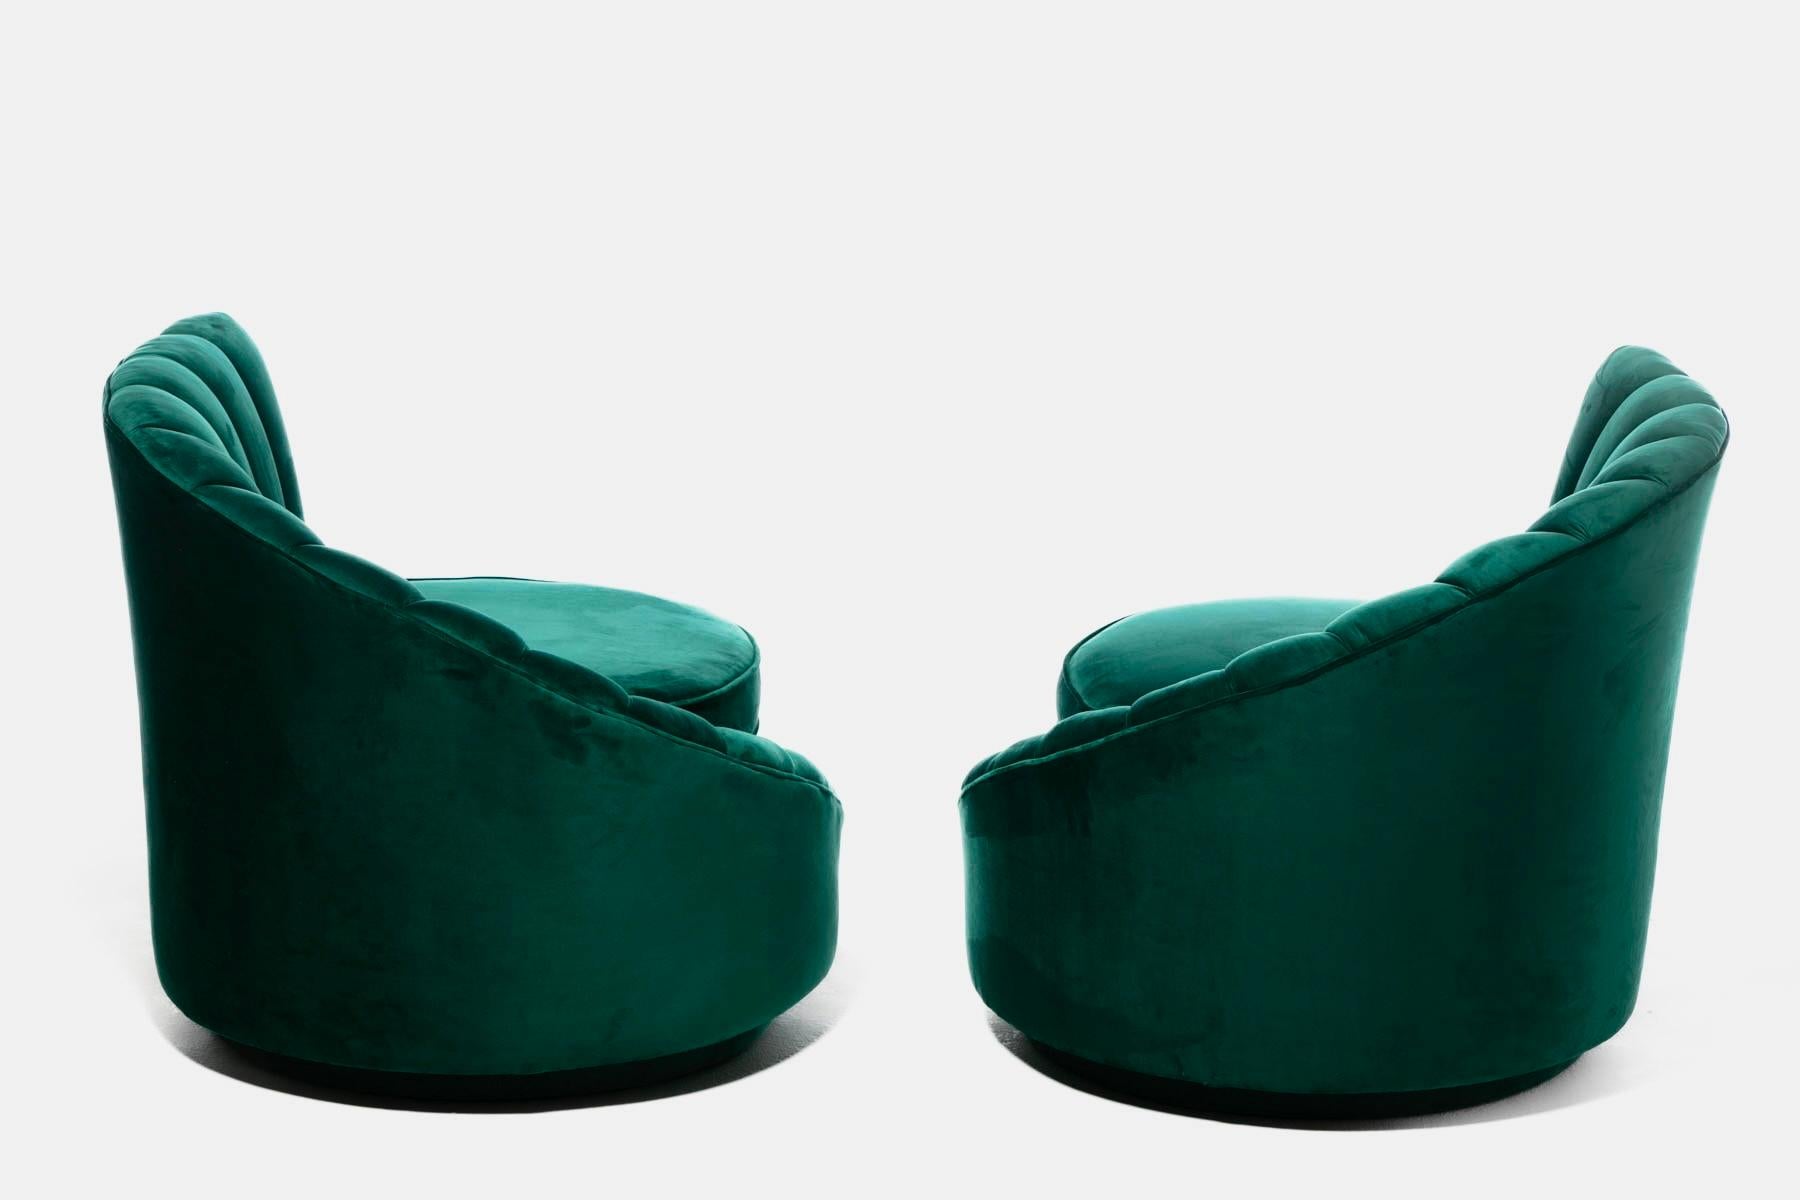 Hollywood Regency Glamorous Asymmetrical Swivel Chairs in Emerald Green Velvet For Sale 1